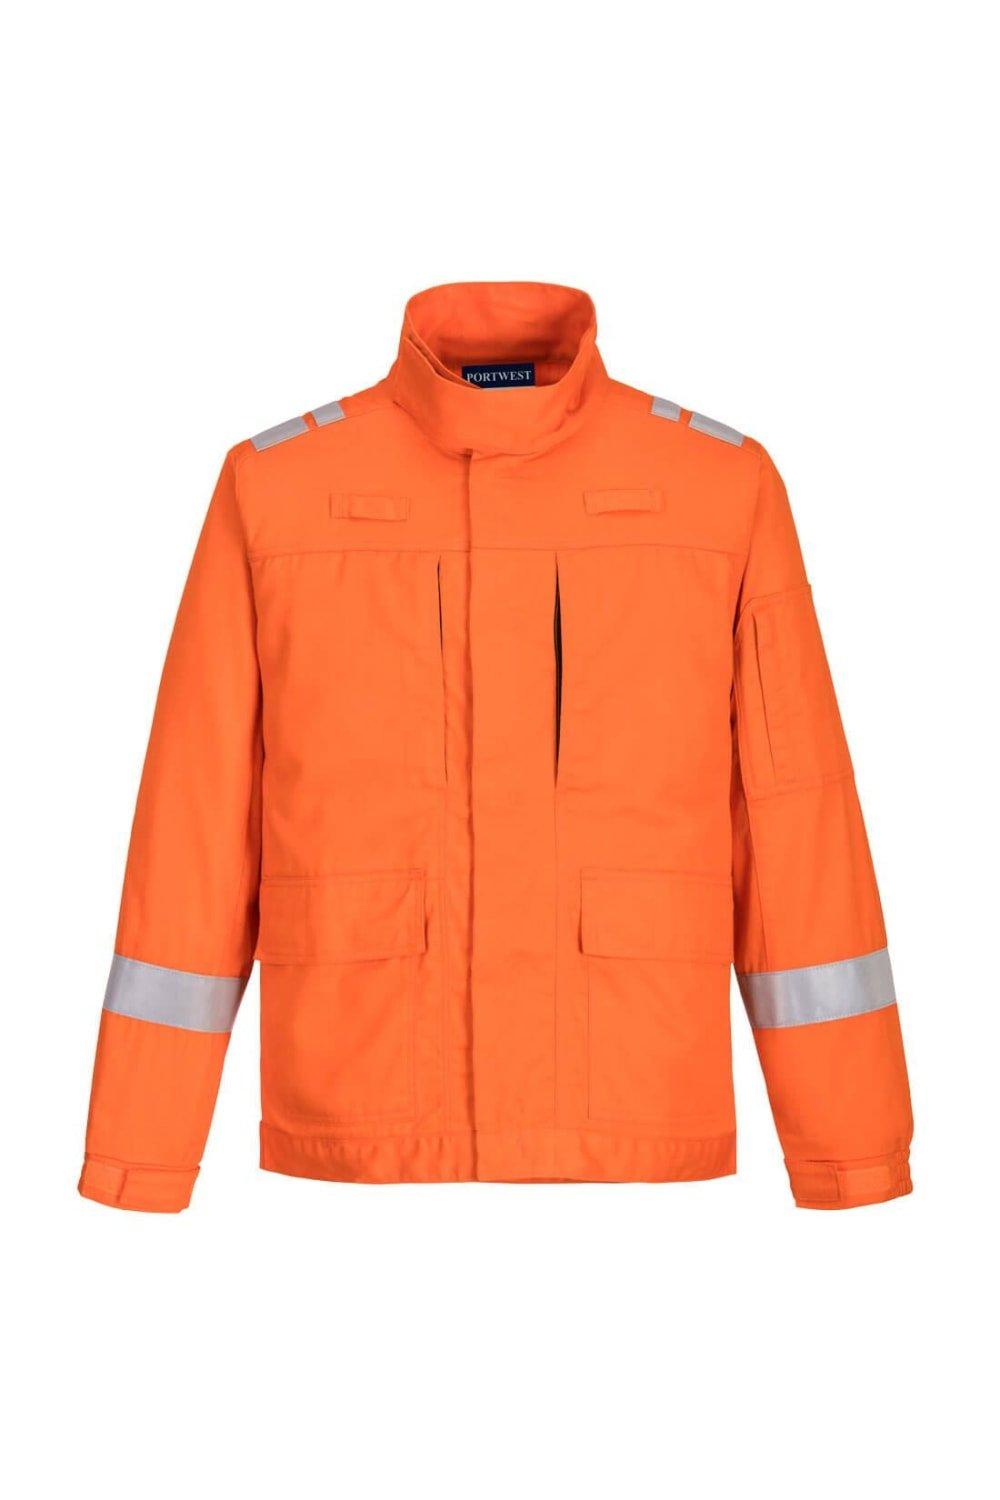 Эластичная куртка Bizflame Plus Portwest, оранжевый